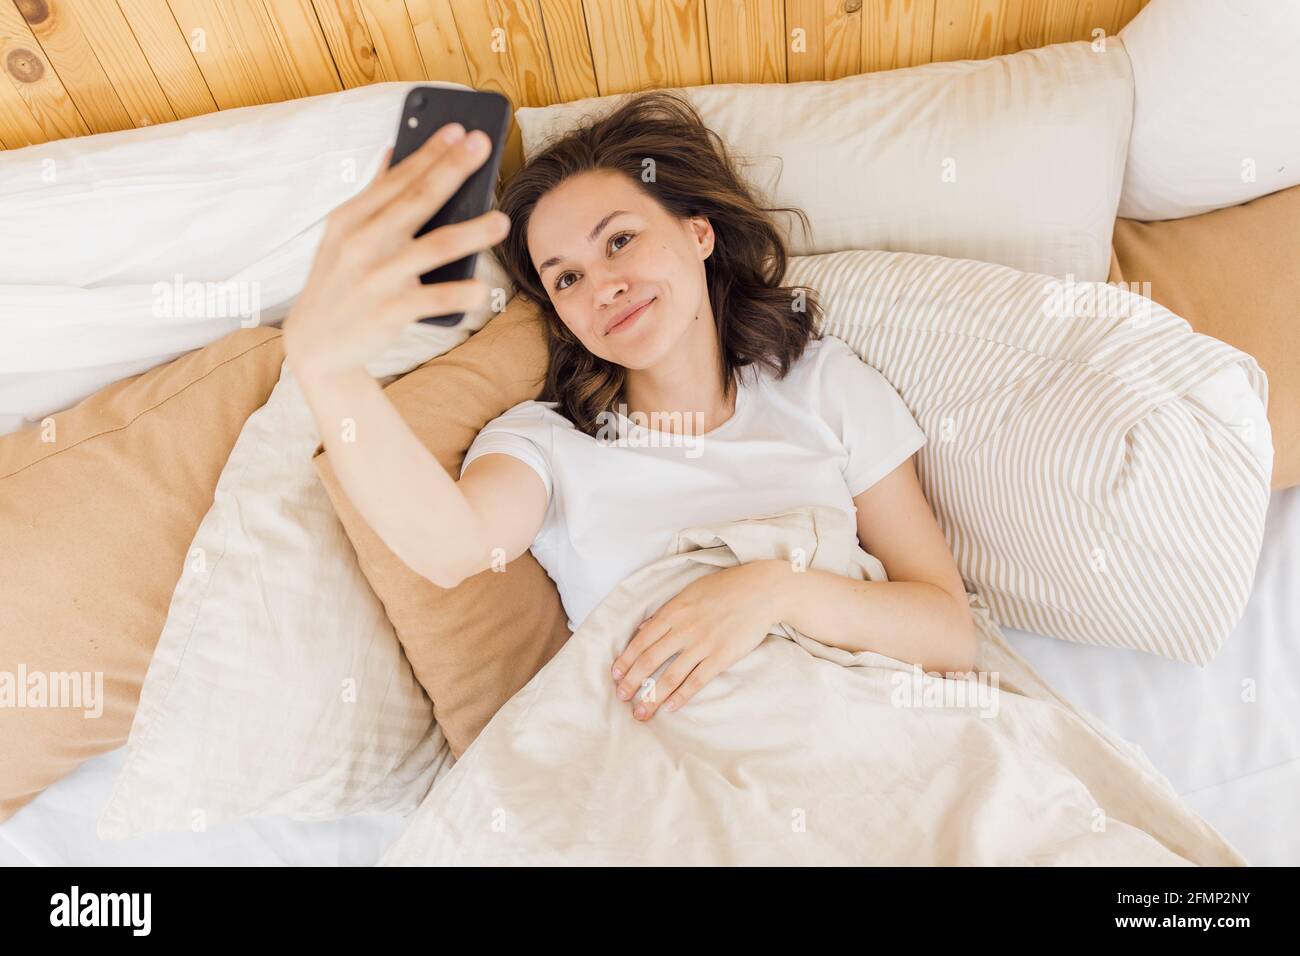 Junge attraktive Frau nimmt ein Selfie kurz nach dem Aufwachen Stockfoto